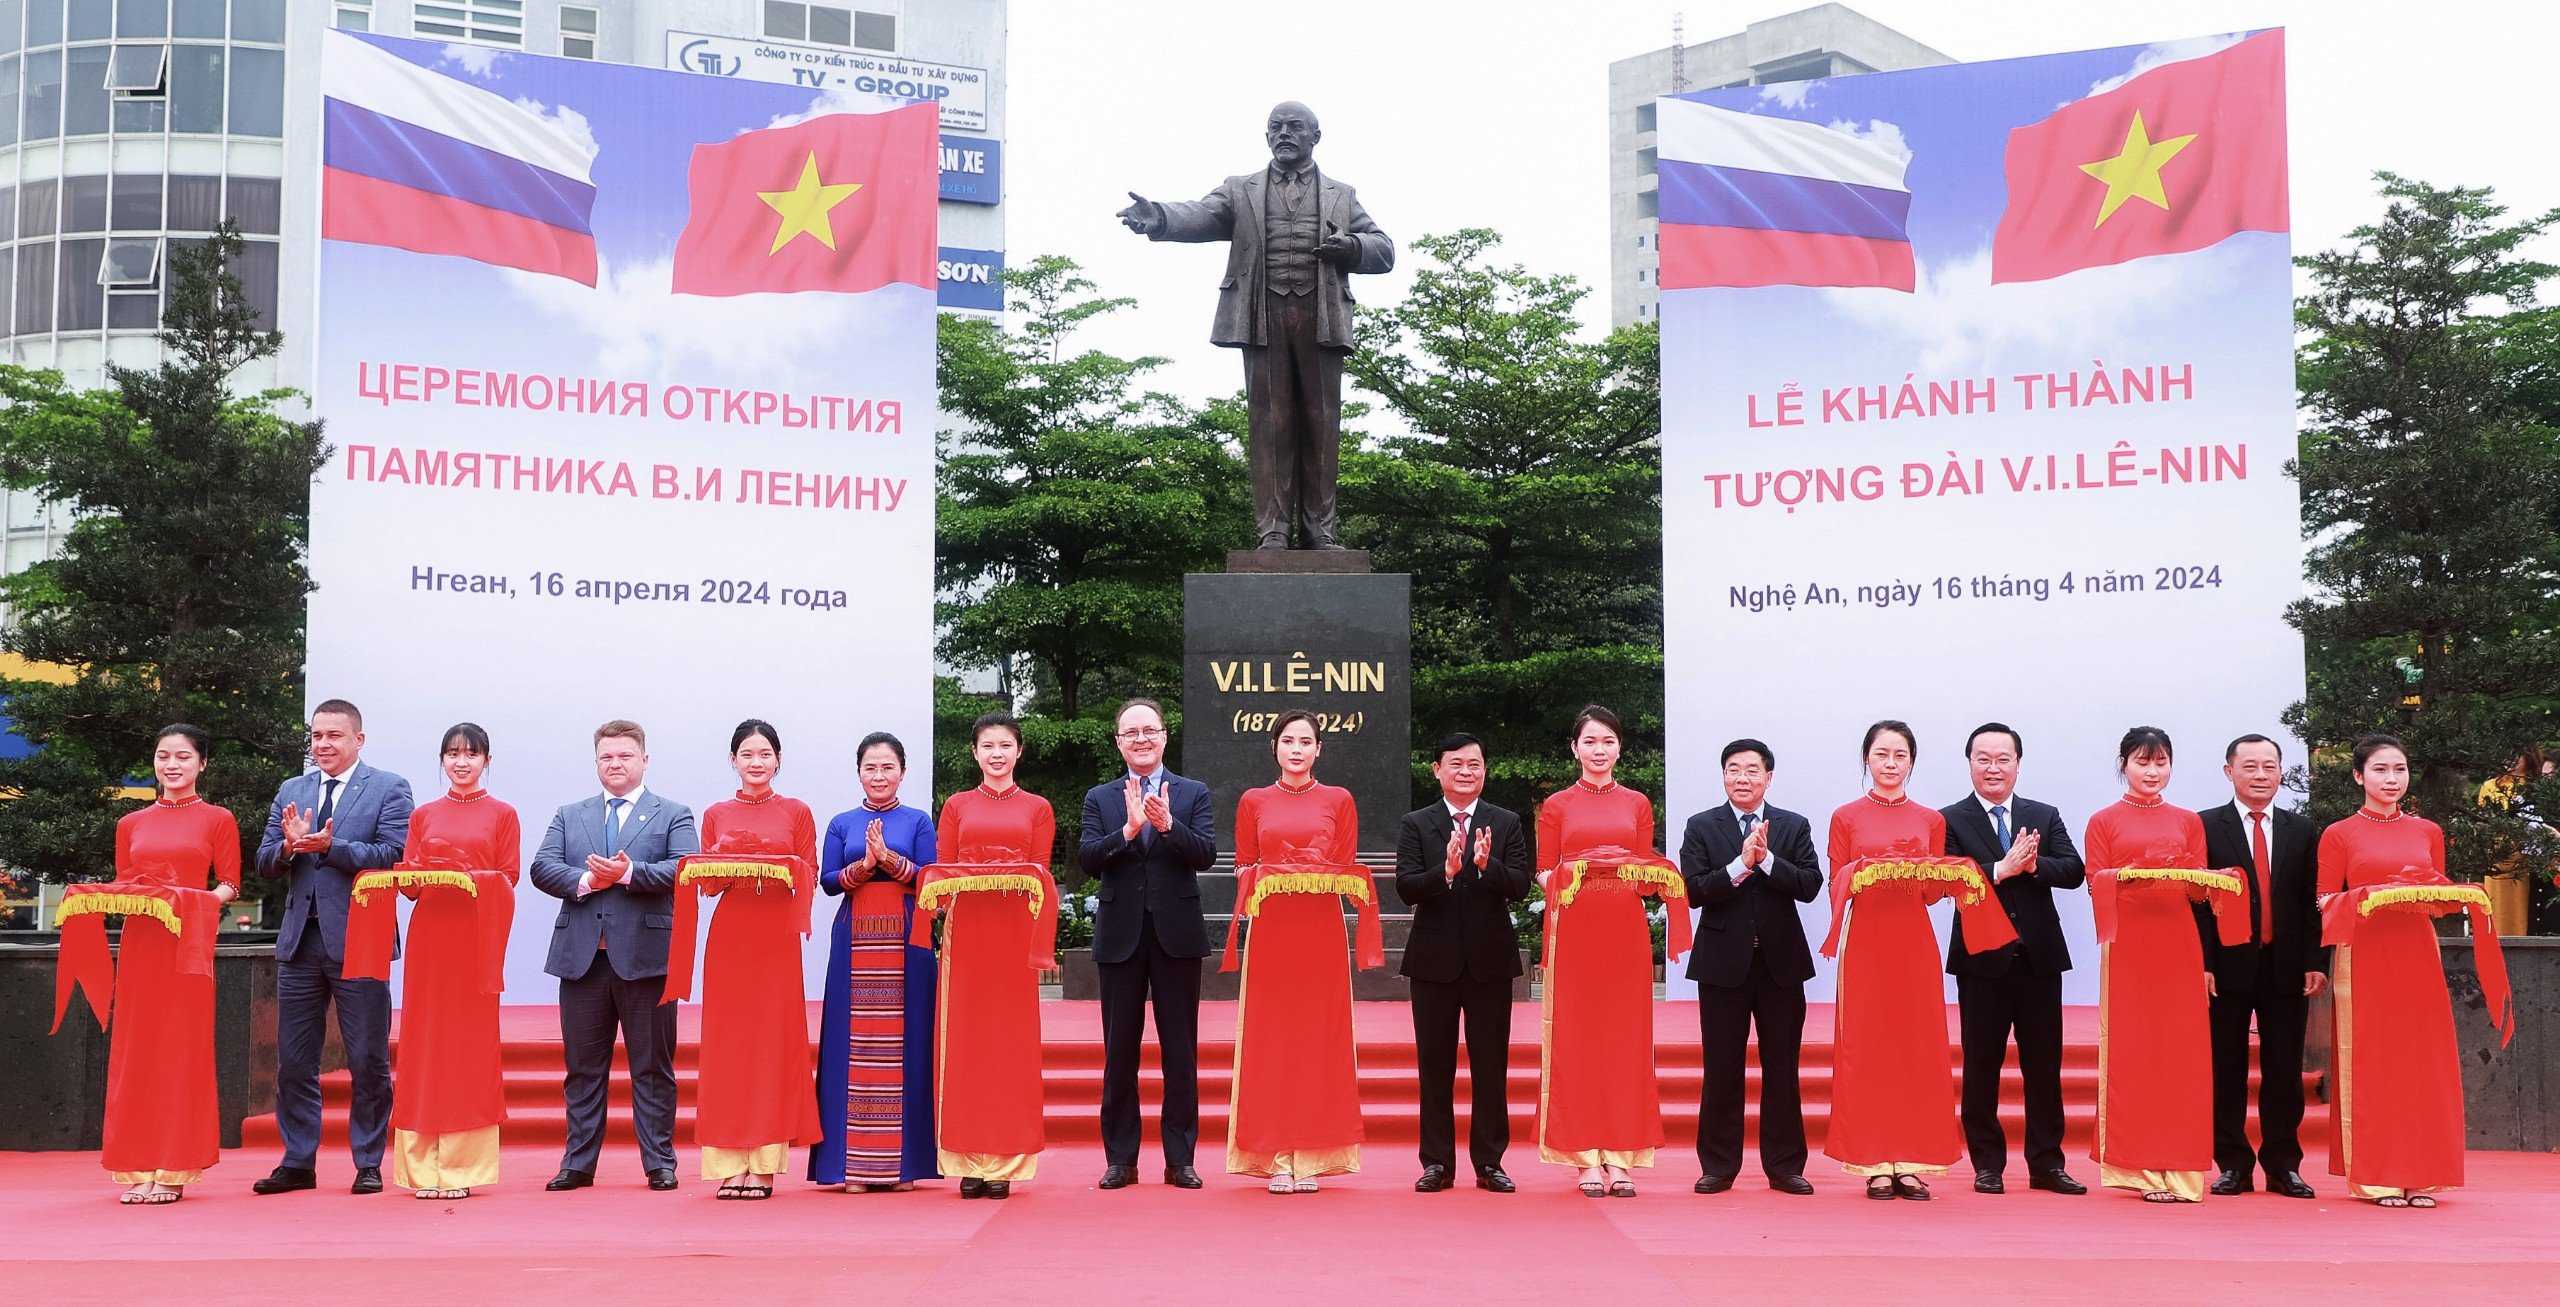 Lễ tiếp nhận và khánh thành tượng V.I.Lê-nin tại thành phố Vinh, Nghệ An